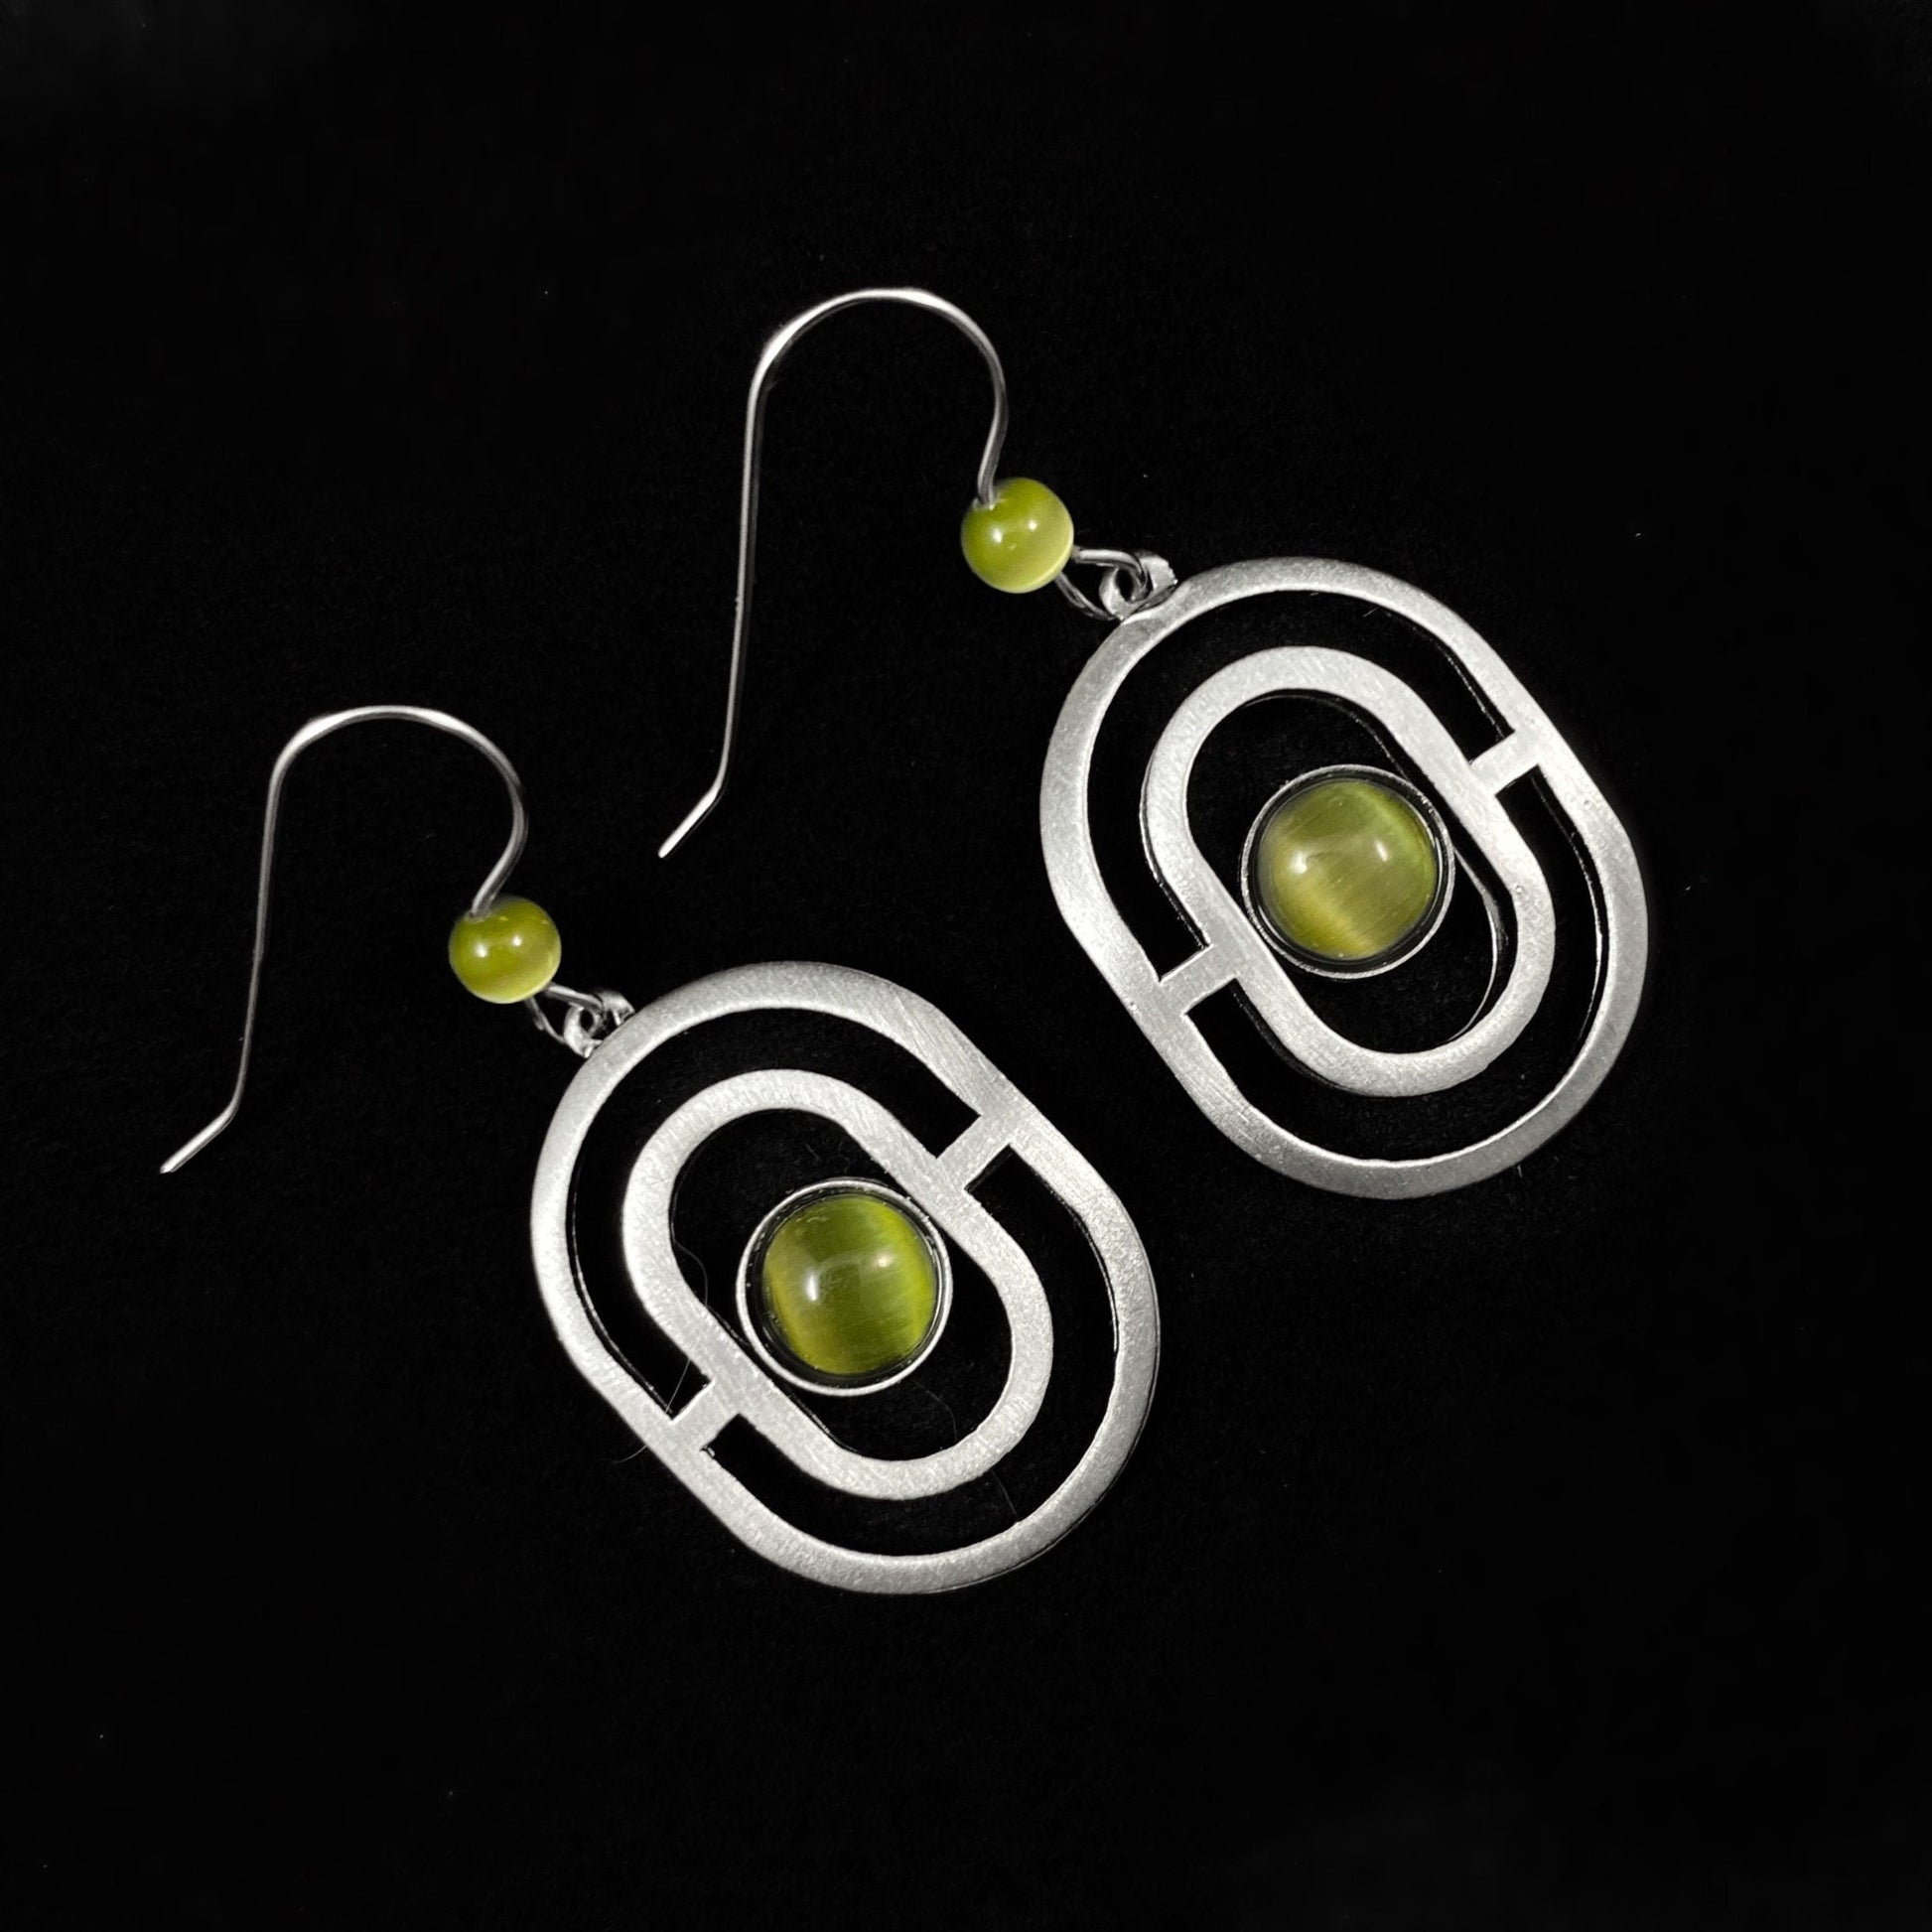 Lightweight Handmade Geometric Aluminum Earrings, Green Oval Maze